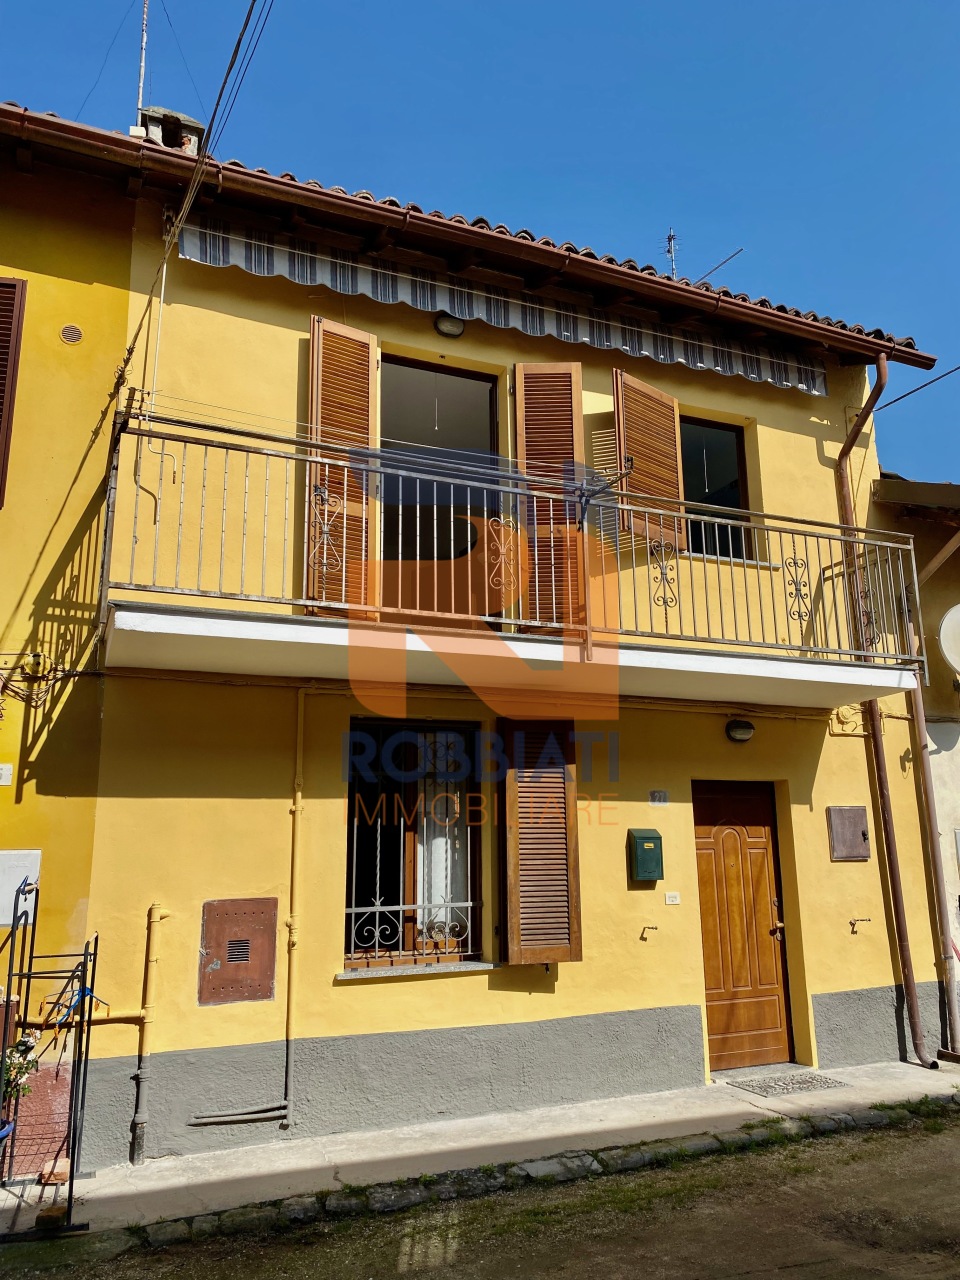 Villa a Schiera in vendita a Zinasco, 2 locali, prezzo € 58.000 | PortaleAgenzieImmobiliari.it